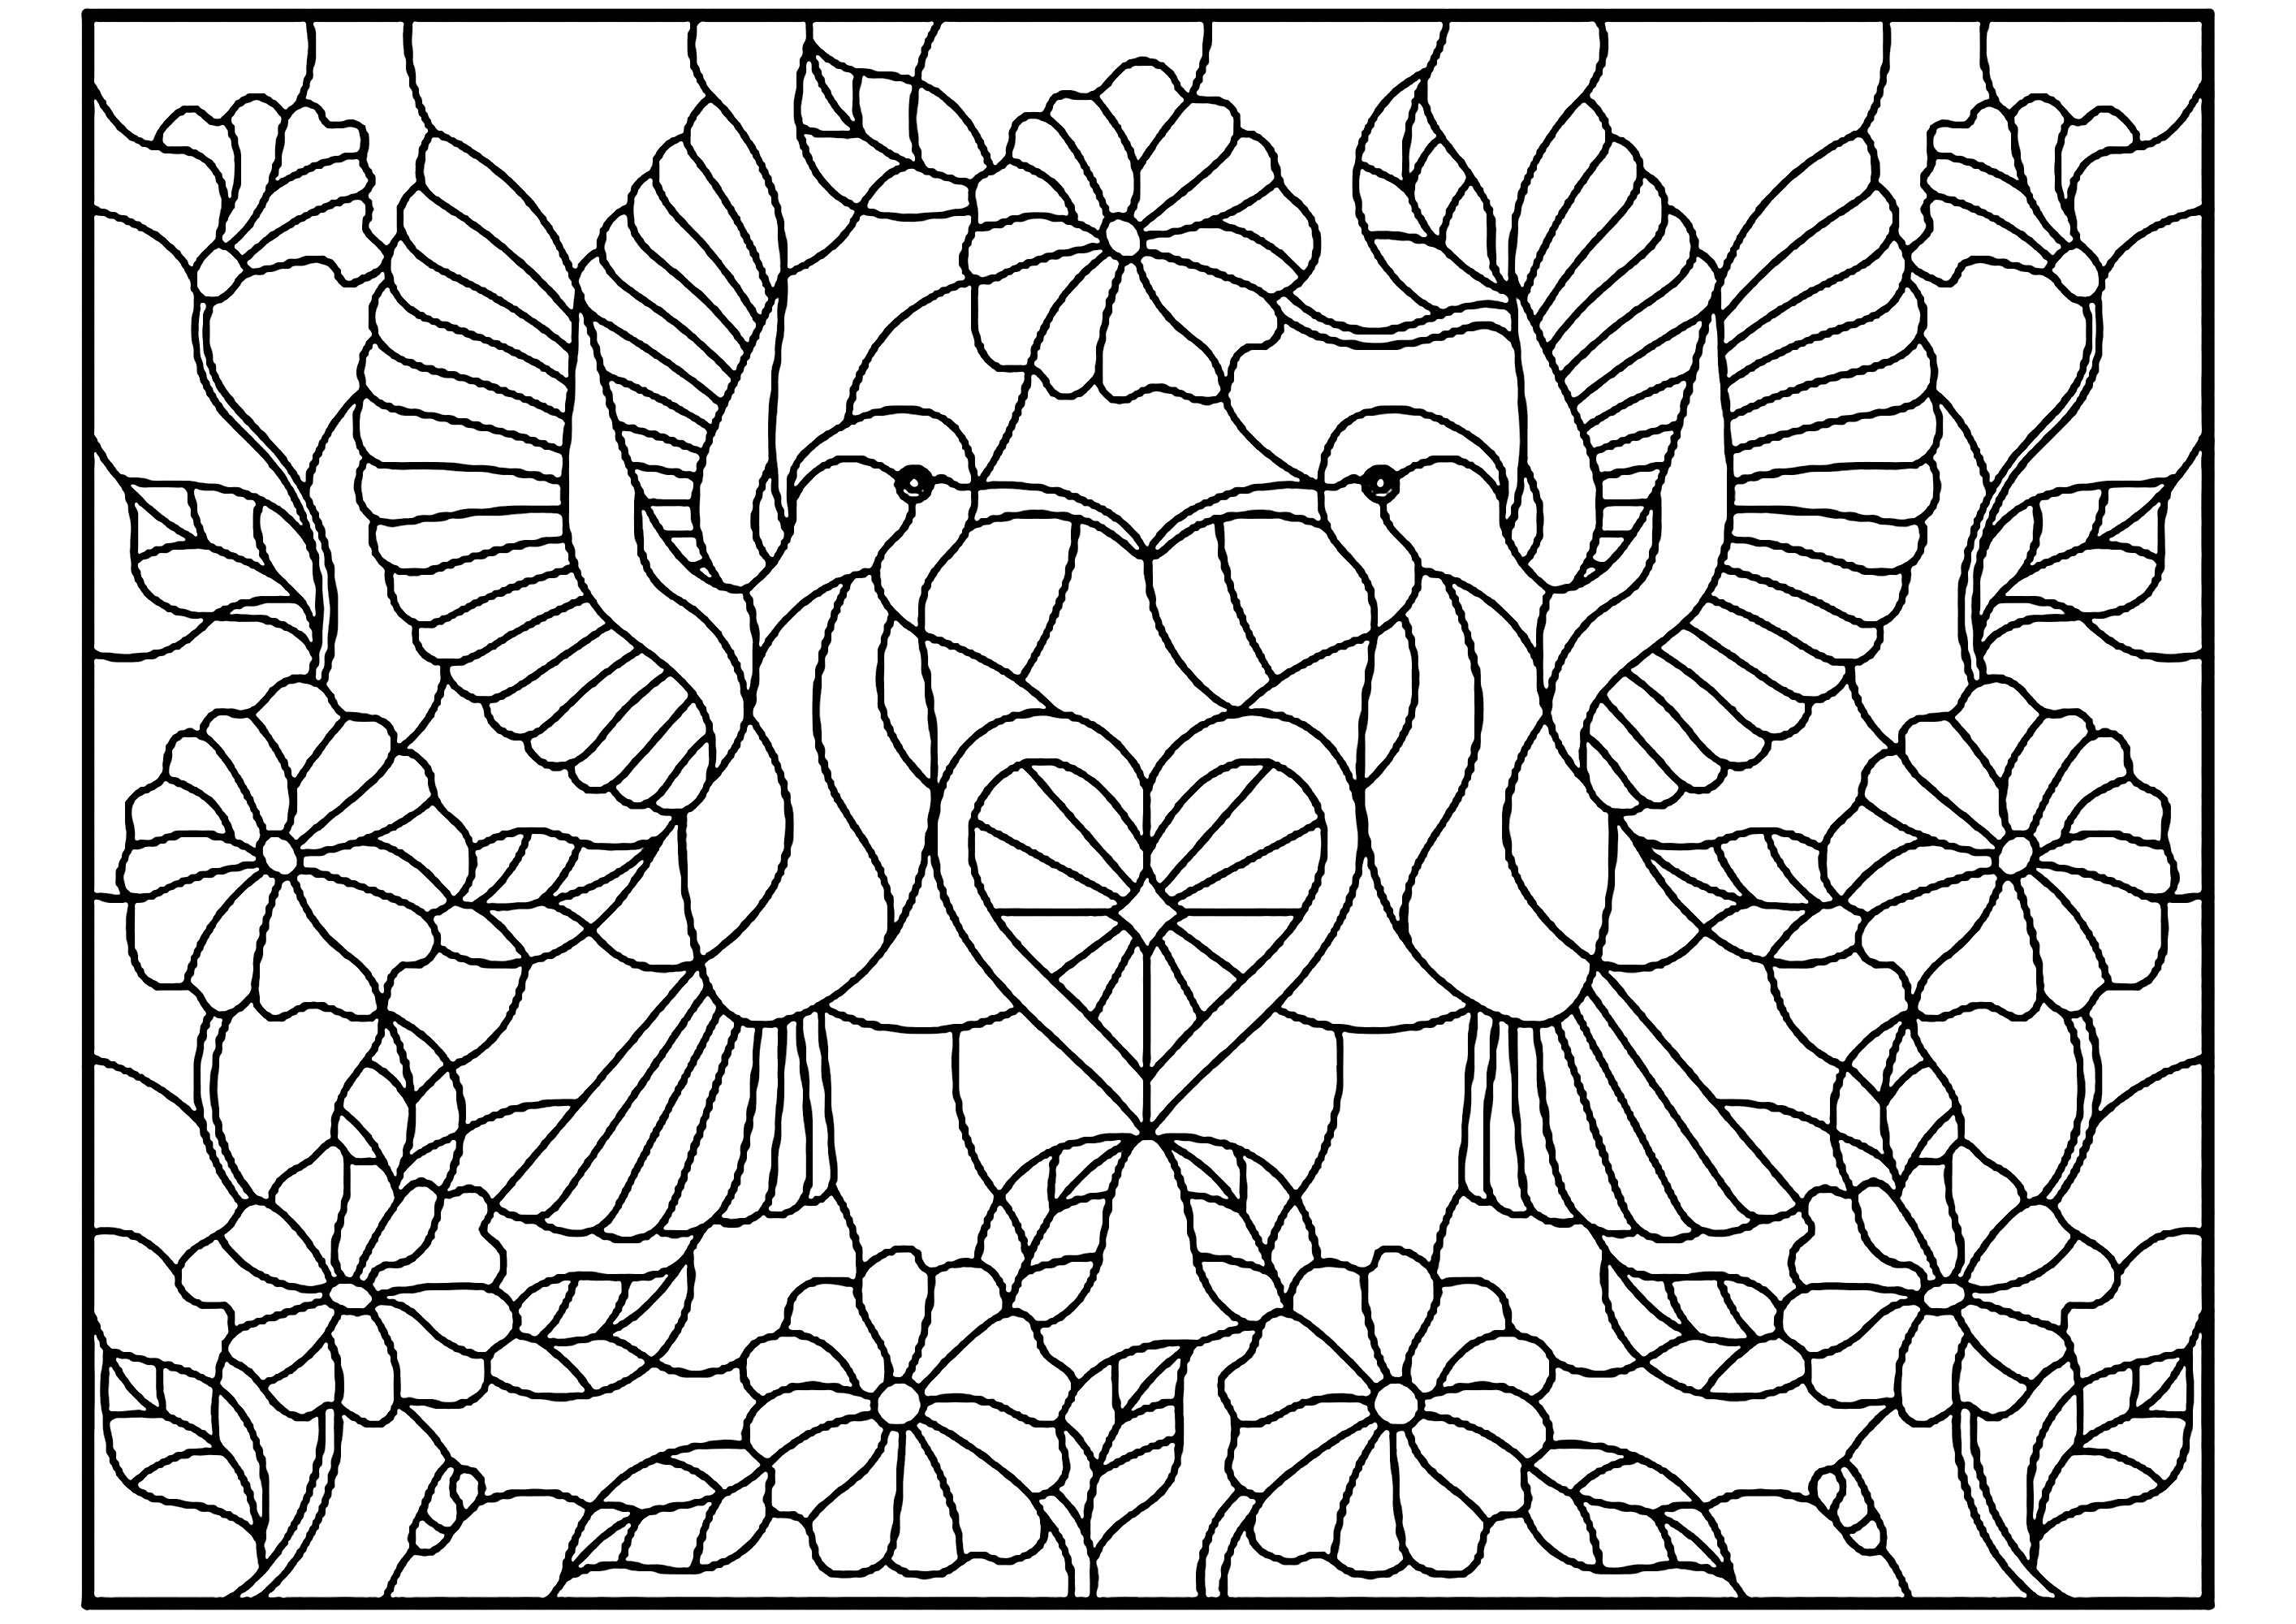 Zwei Vögel und ein kleines Herz in der Mitte, Glasmalerei Stil. Perfekte Symmetrie für ein Farbschema, das zweifellos zu einem außergewöhnlichen Endergebnis führen wird, Quelle : 123rf   Künstler : zagory